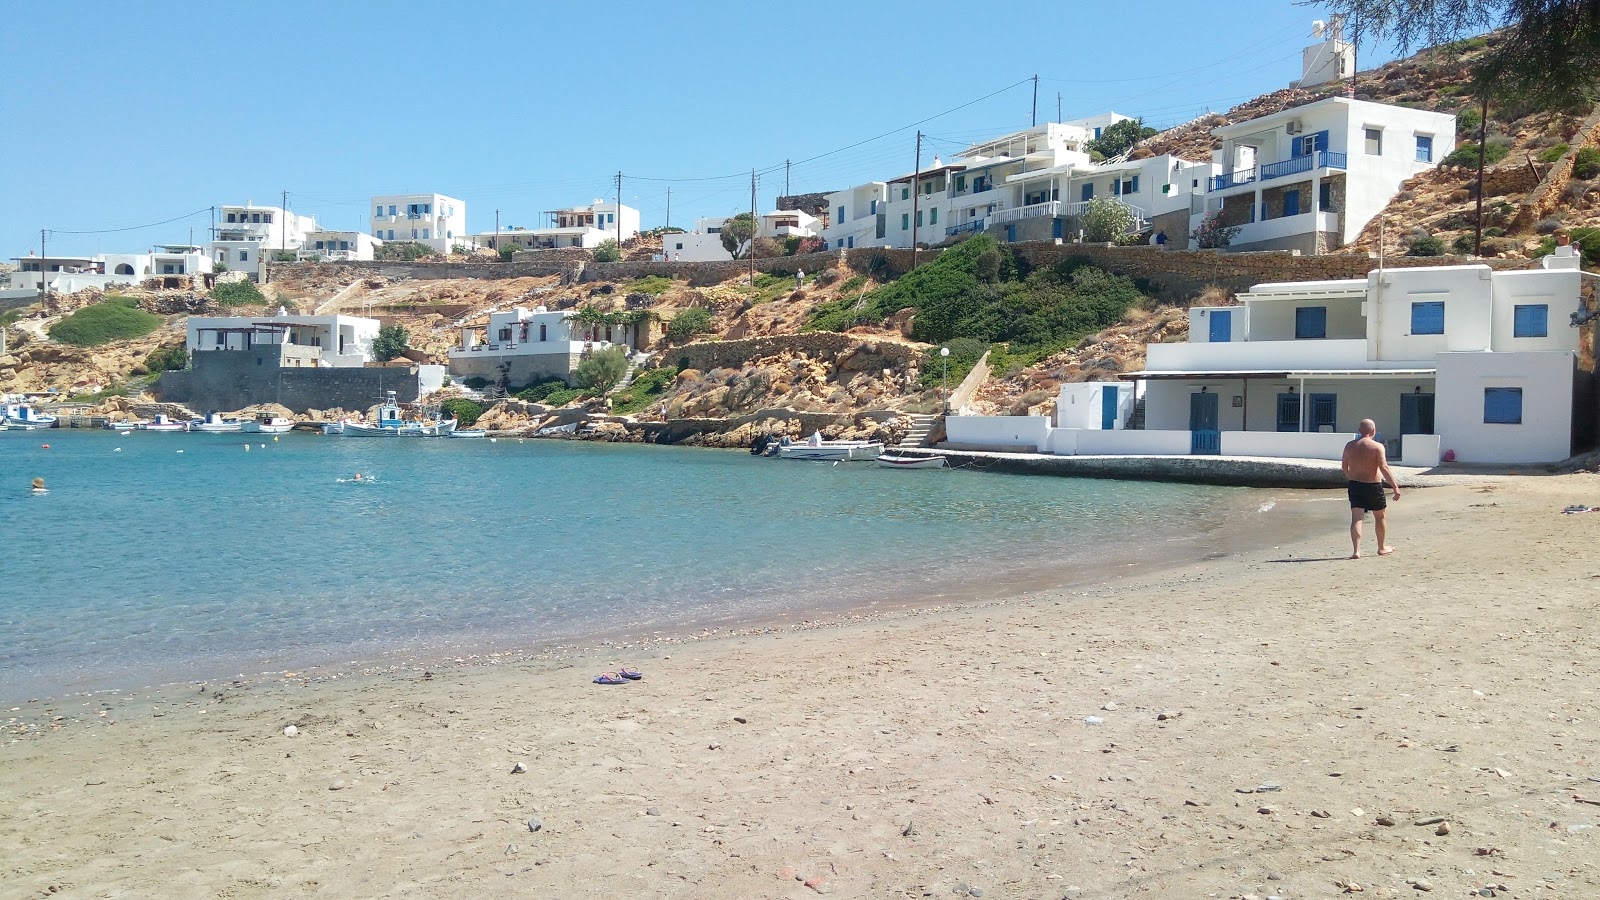 Zdjęcie Cheronissos beach z poziomem czystości wysoki